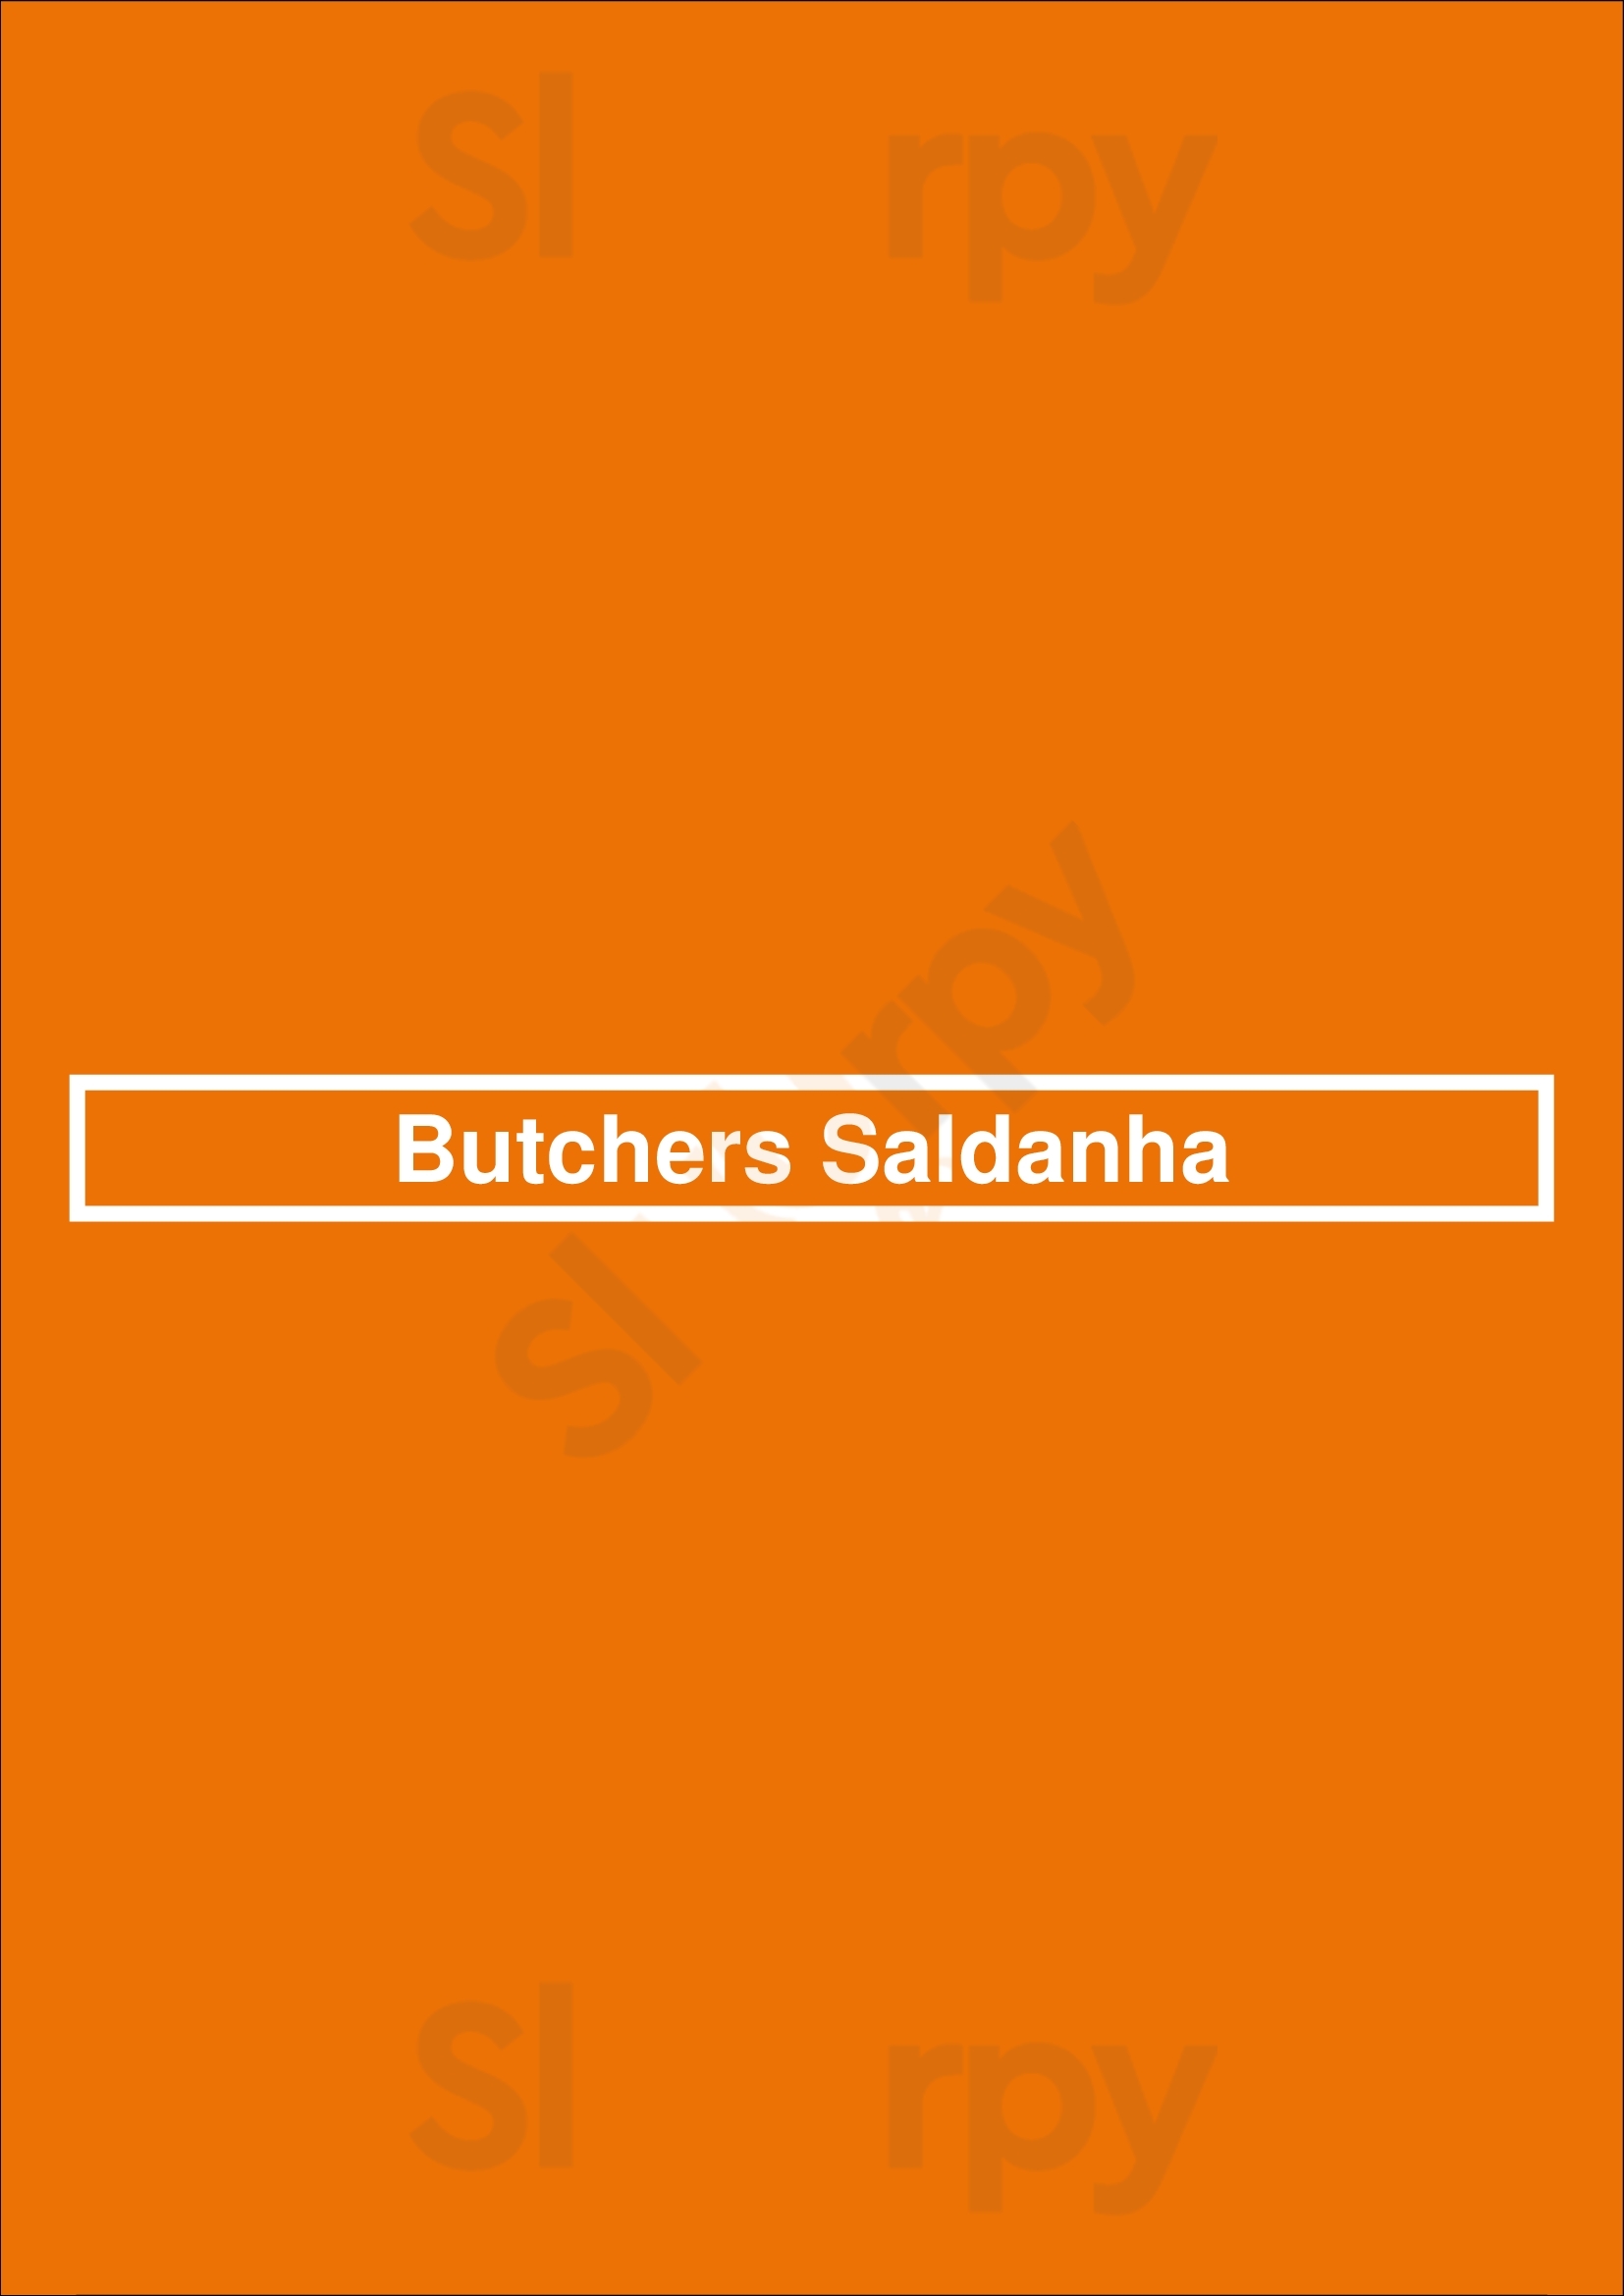 Butchers Saldanha Lisboa Menu - 1